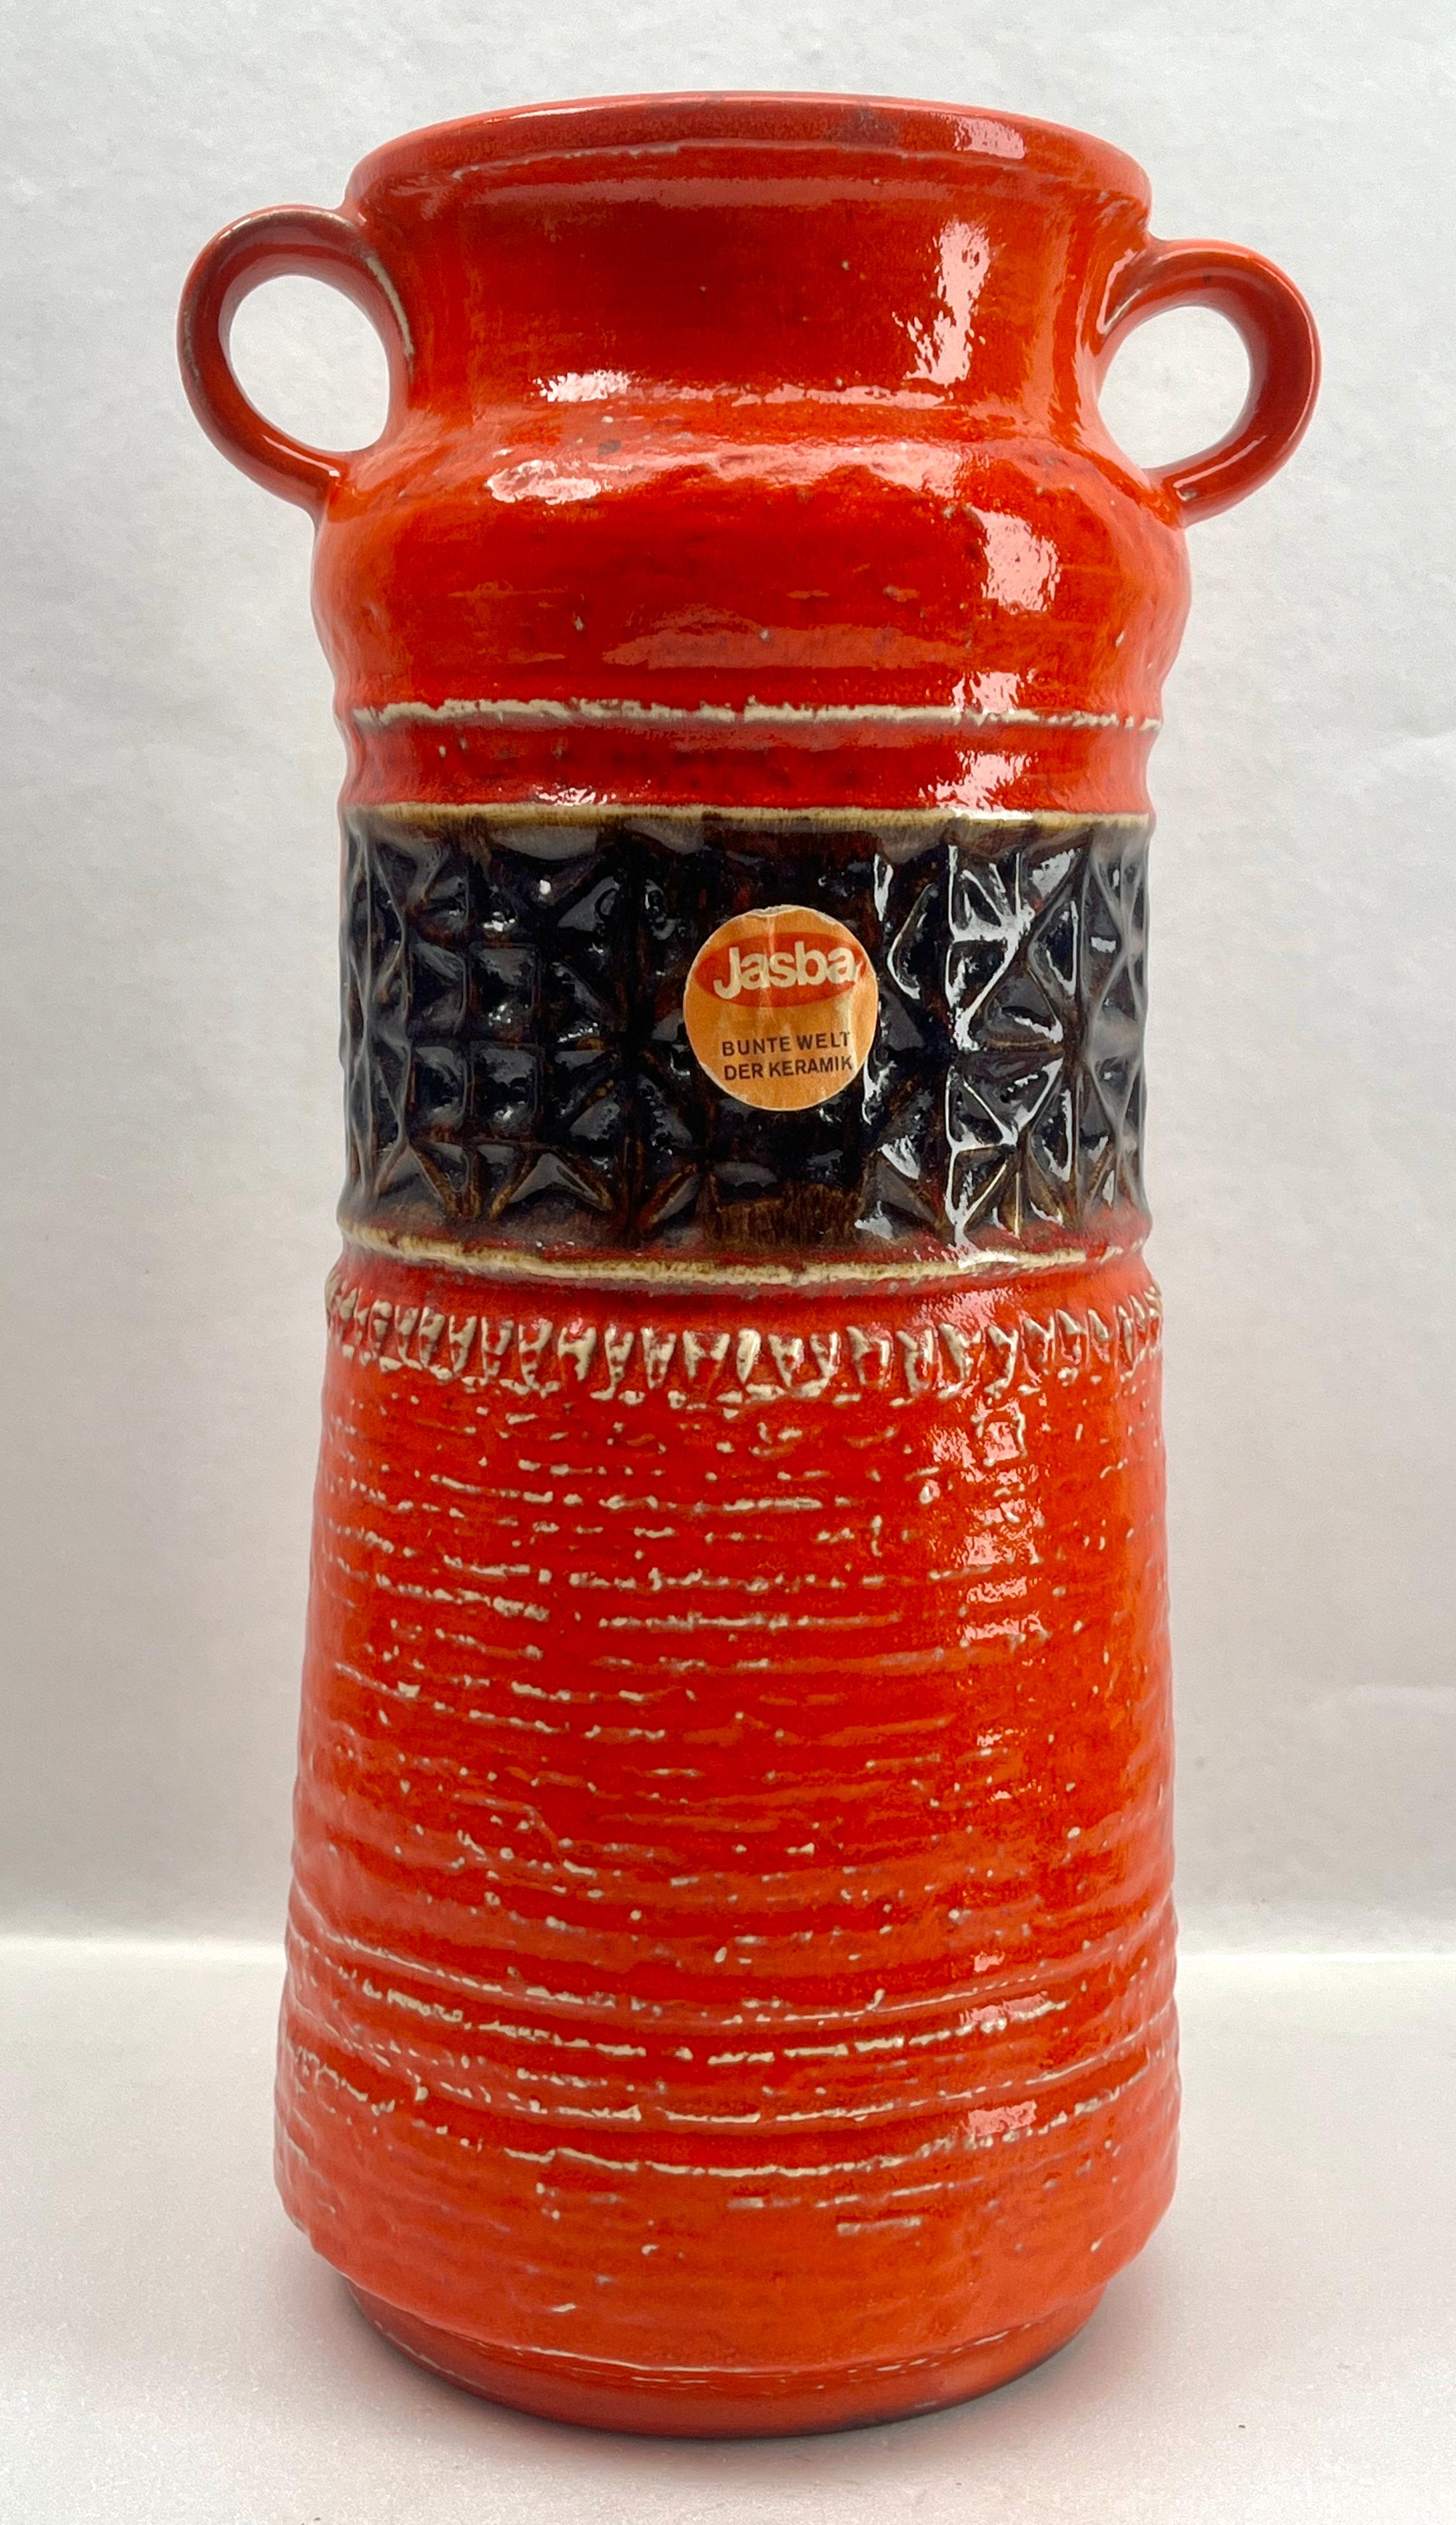 Diese original Jasba Vase wurde in den 1970er Jahren in Deutschland hergestellt. Sie ist aus Keramik gefertigt.
Auf dem Boden ist die Vasenseriennummer N 10111 35 Handarbeit angegeben.
Geradliniges und minimalistisches Design aus den 1960er Jahren.